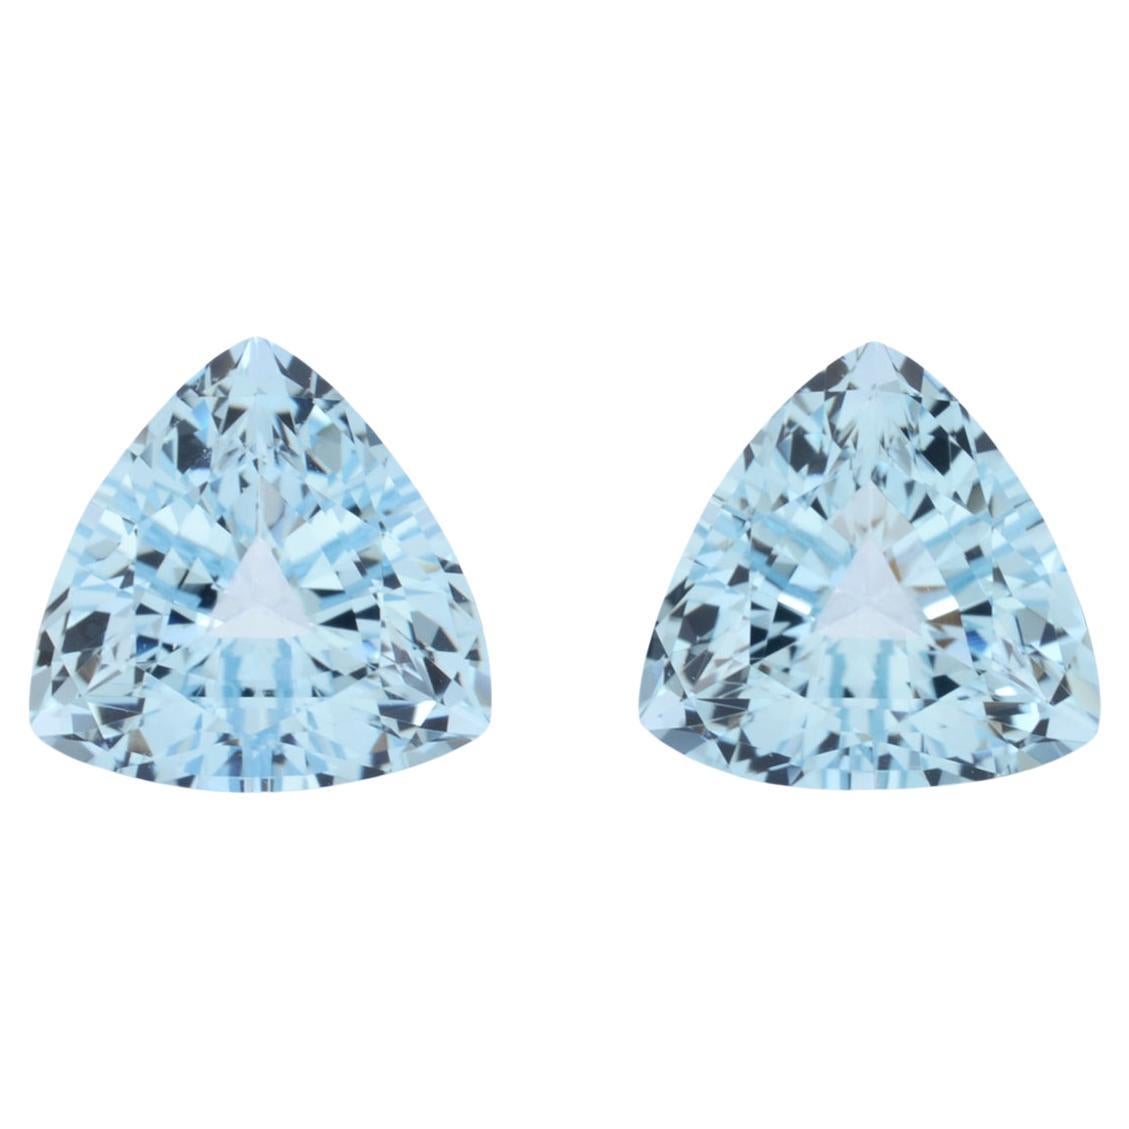 Aquamarine Earrings Loose Gemstones 4.57 Carat Trillion Unmounted Pair For Sale